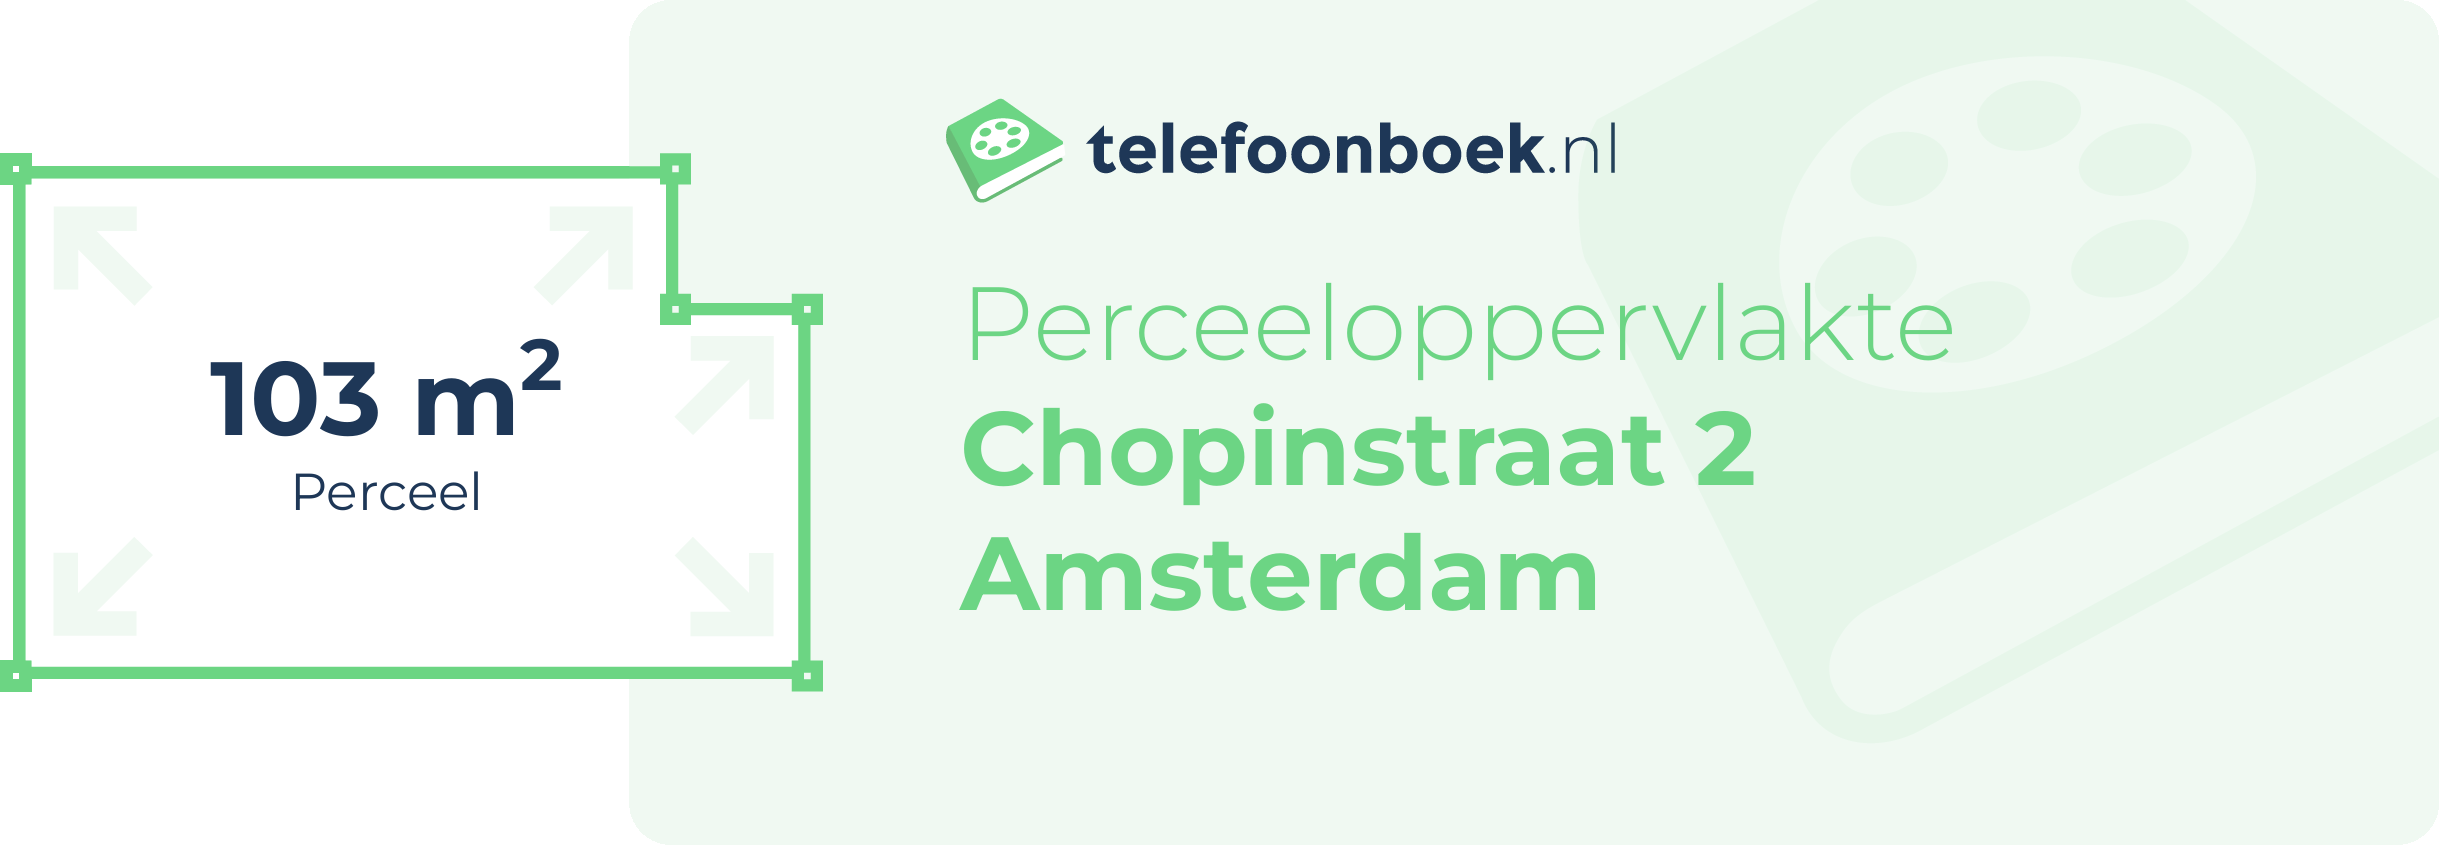 Perceeloppervlakte Chopinstraat 2 Amsterdam